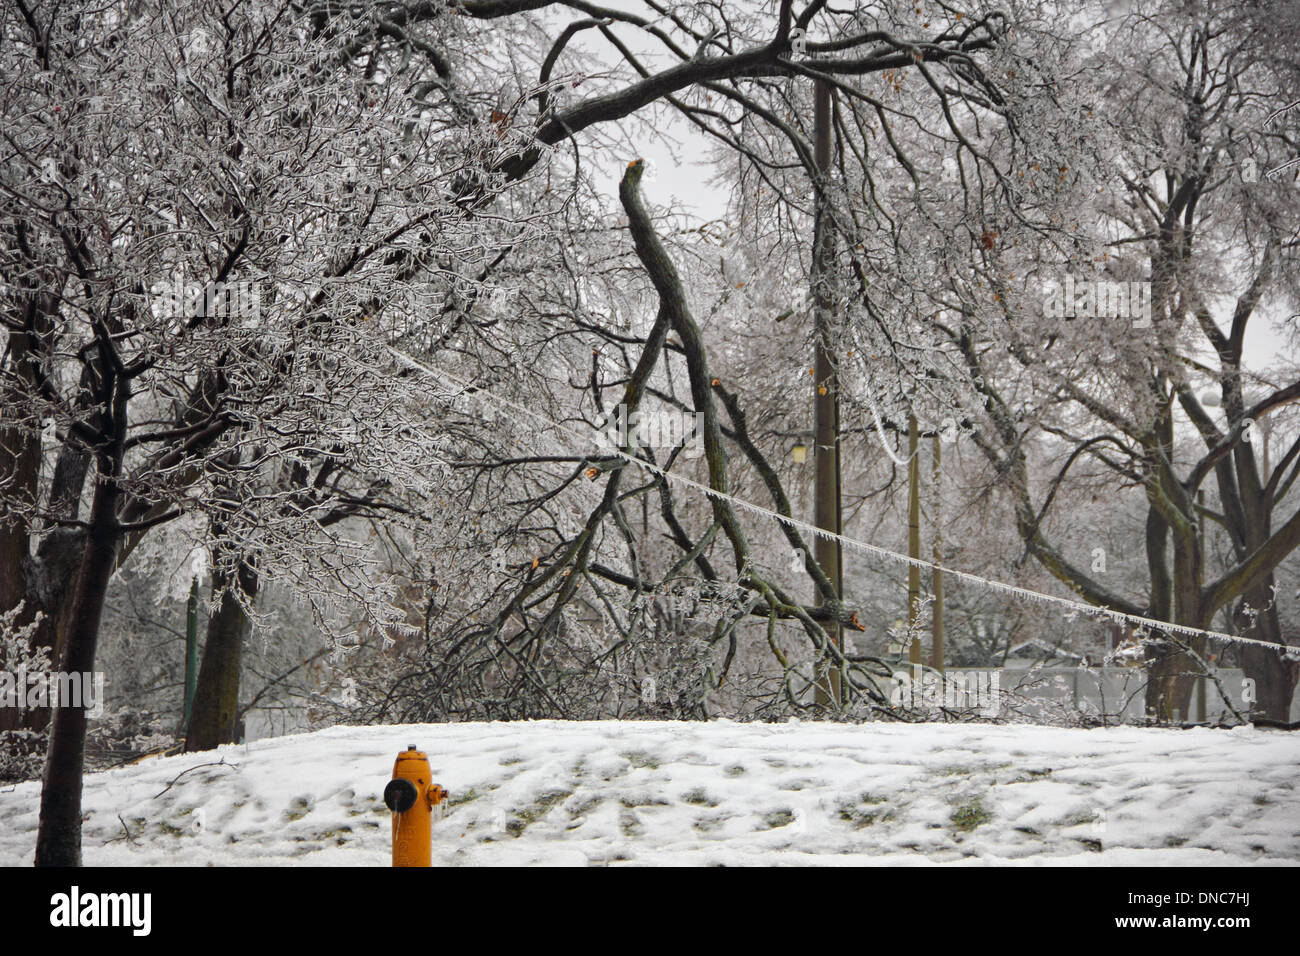 Toronto, Canada. Dec 22, 2013. Ligne d'alimentation et d'arbres brisés à cause de la pluie verglaçante et de la neige en juin, ou Parc Davisville Rowland Park à Toronto le 22 décembre 2013 Crédit : CharlineXia/Alamy Live News Banque D'Images